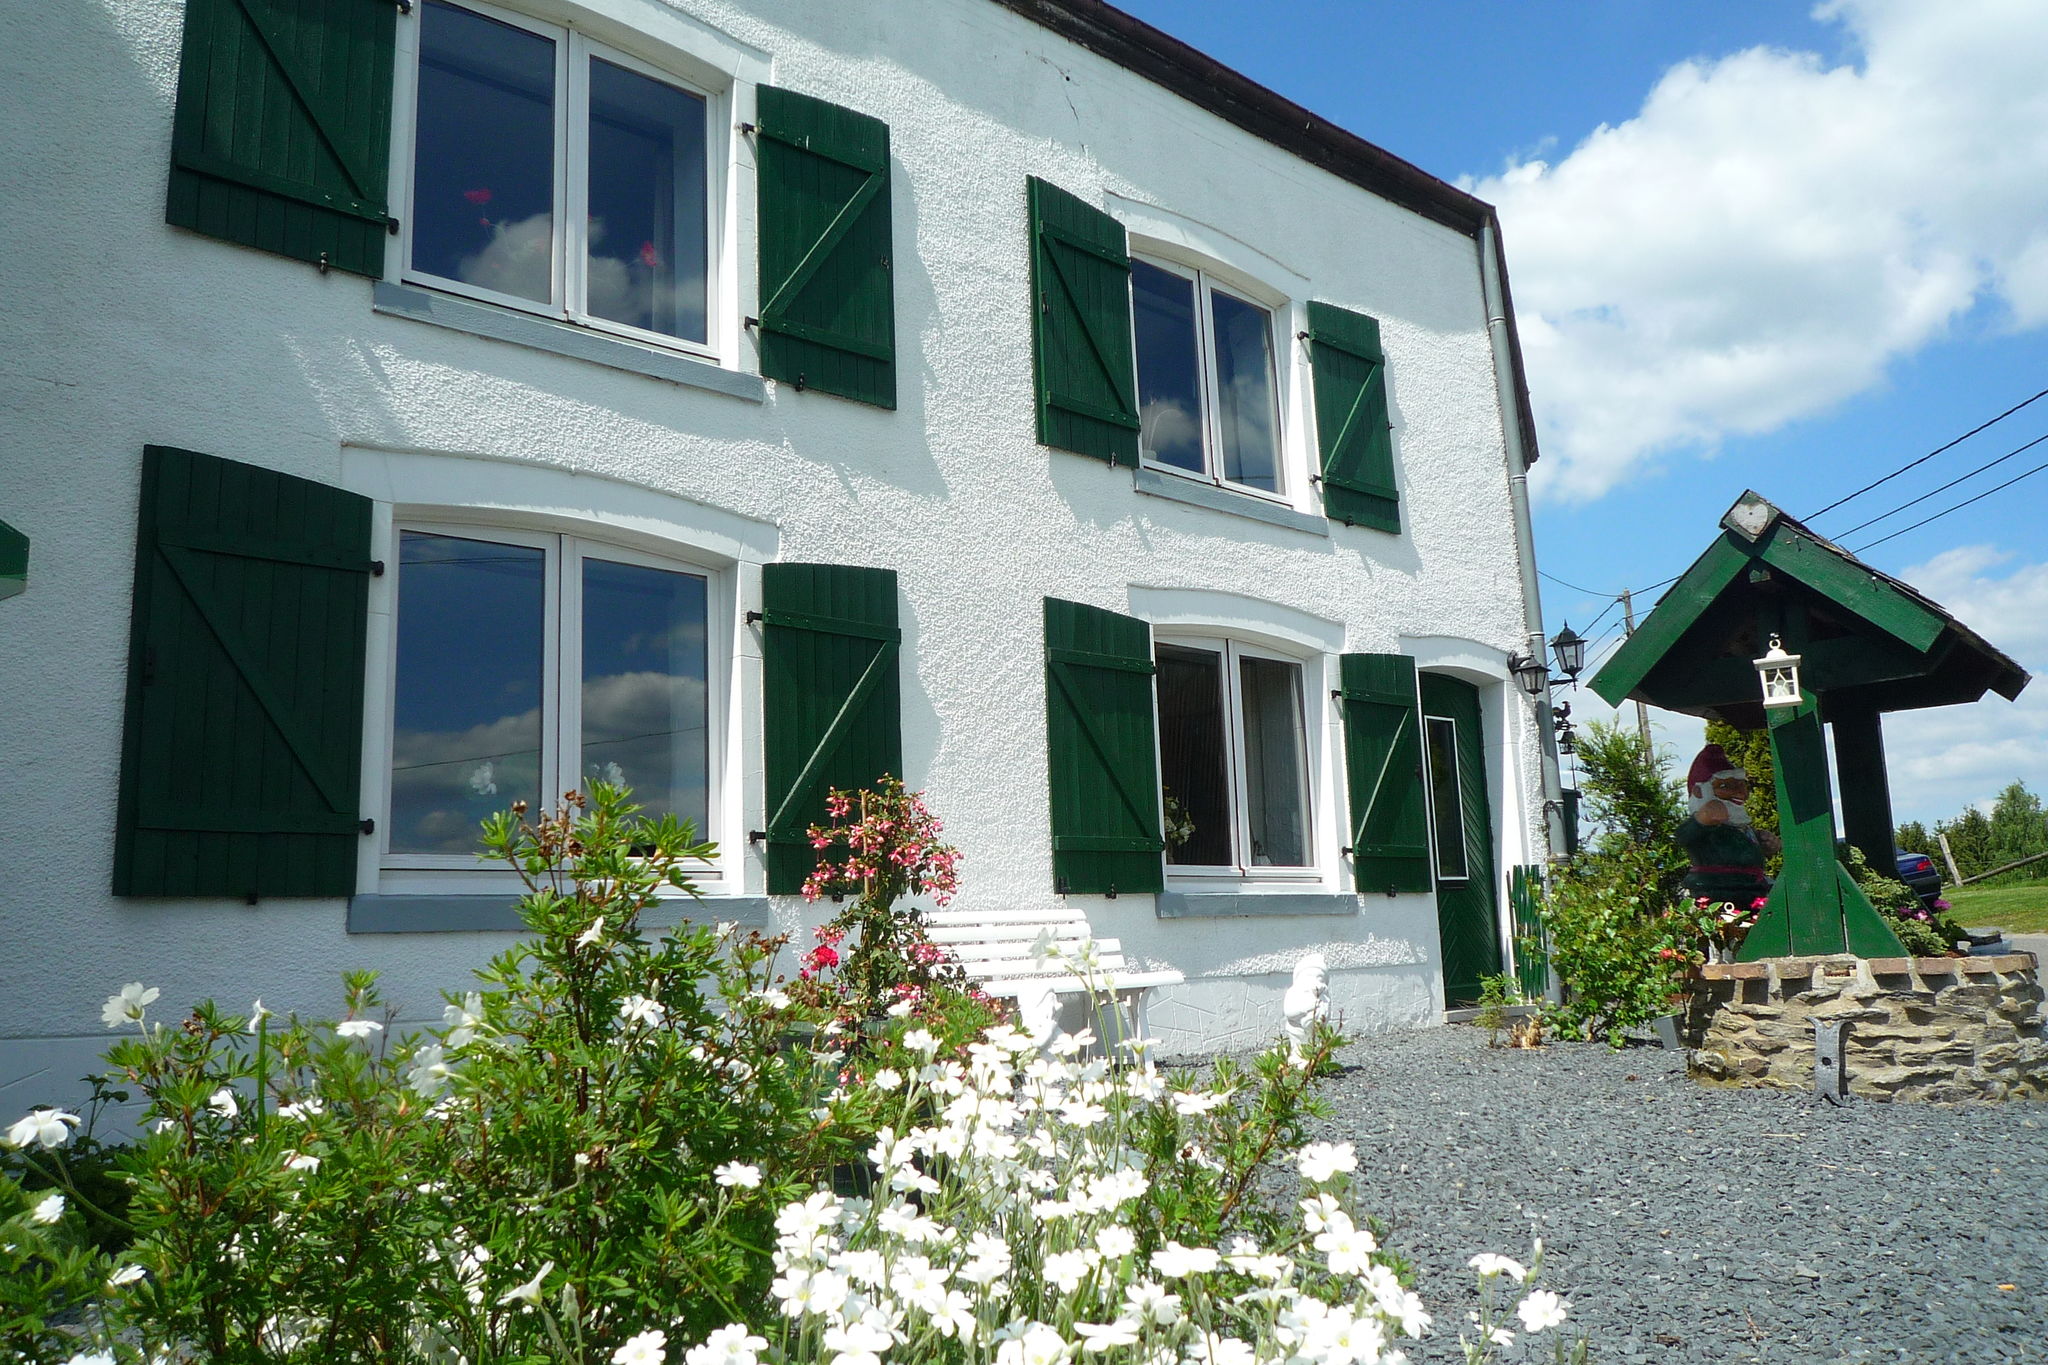 Mooi authentiek vakantiehuis in het hart van de Ardennen